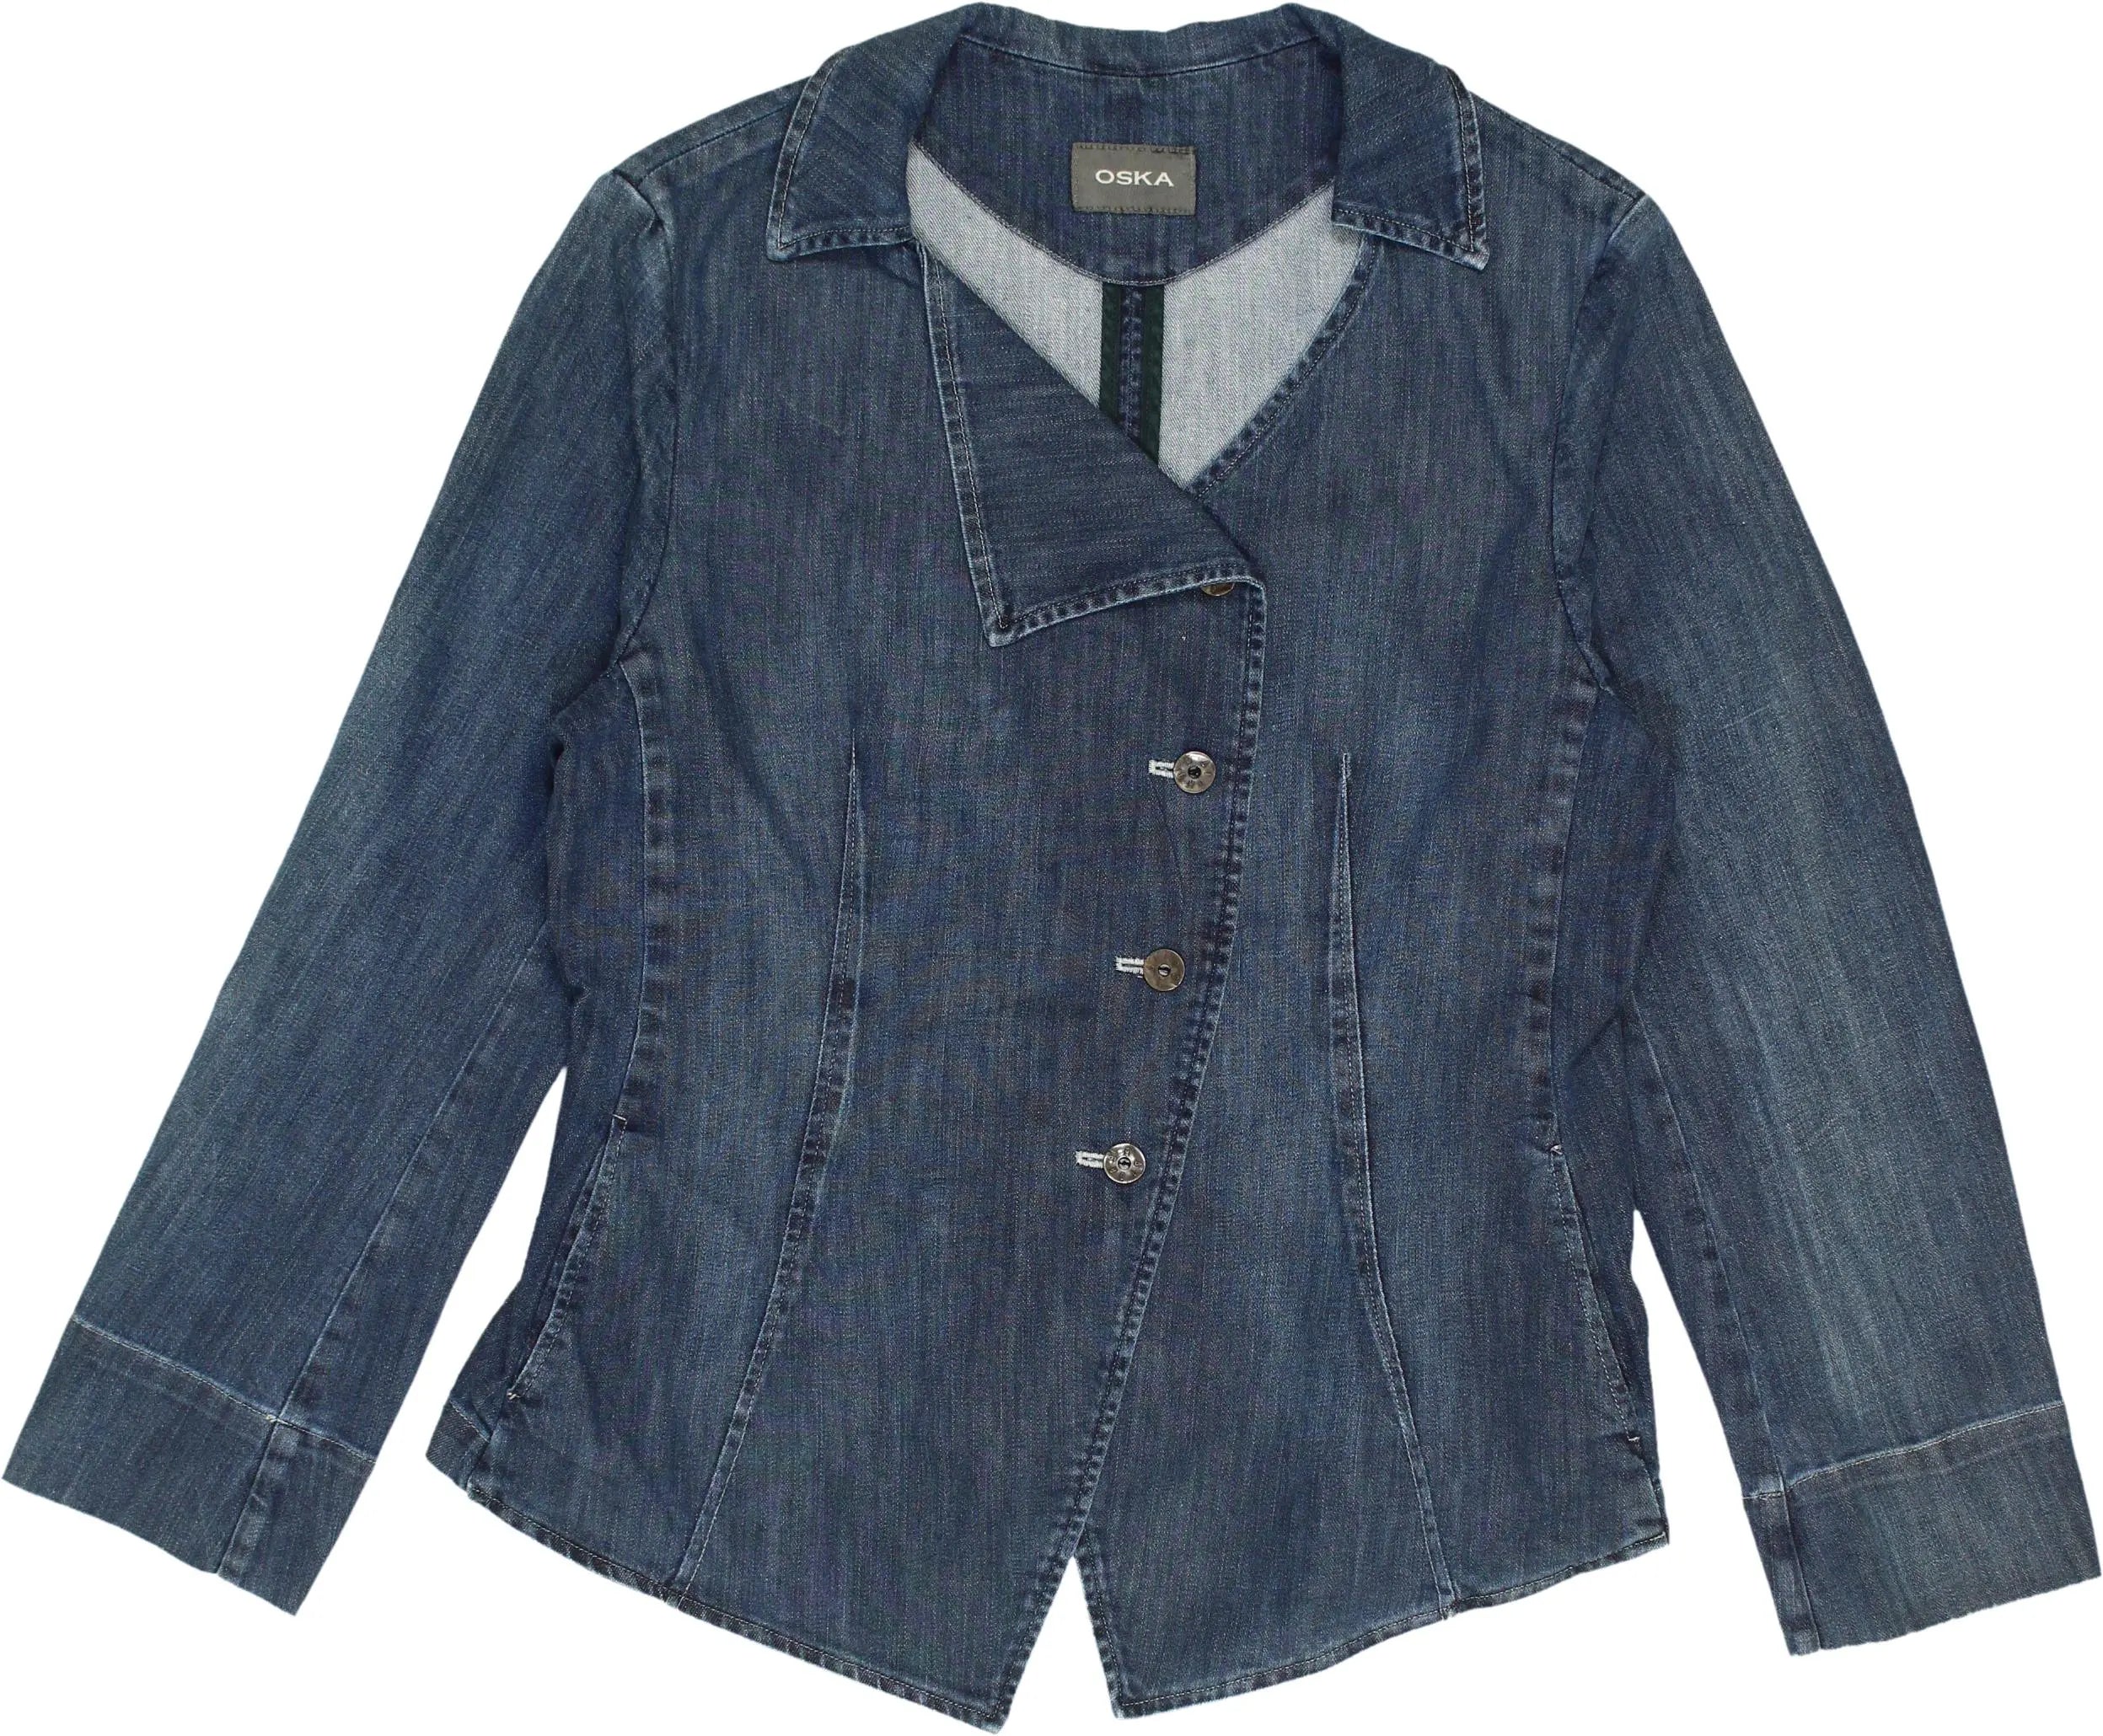 Oska - Denim Jacket by Oska- ThriftTale.com - Vintage and second handclothing